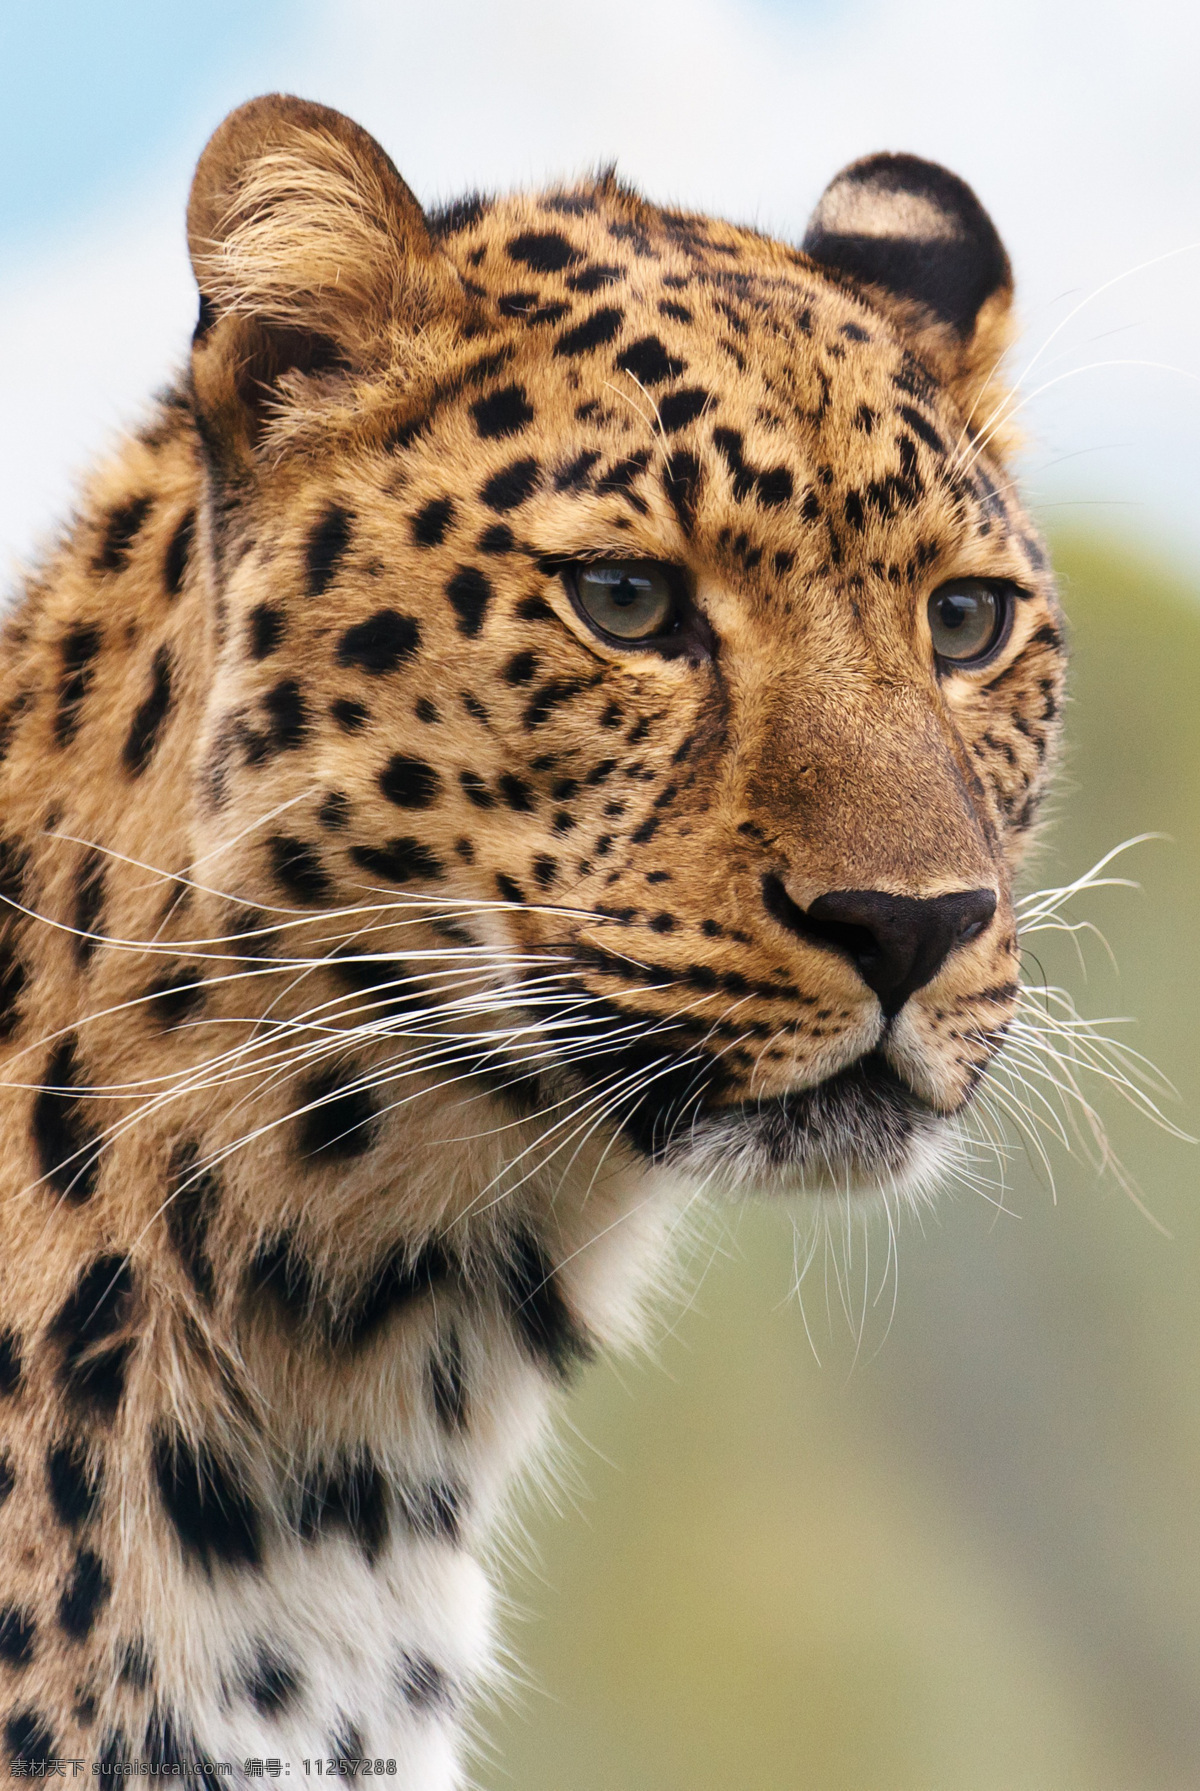 猎豹 豹 猫科动物 食肉动物 动物 凶猛 飞快 美洲豹